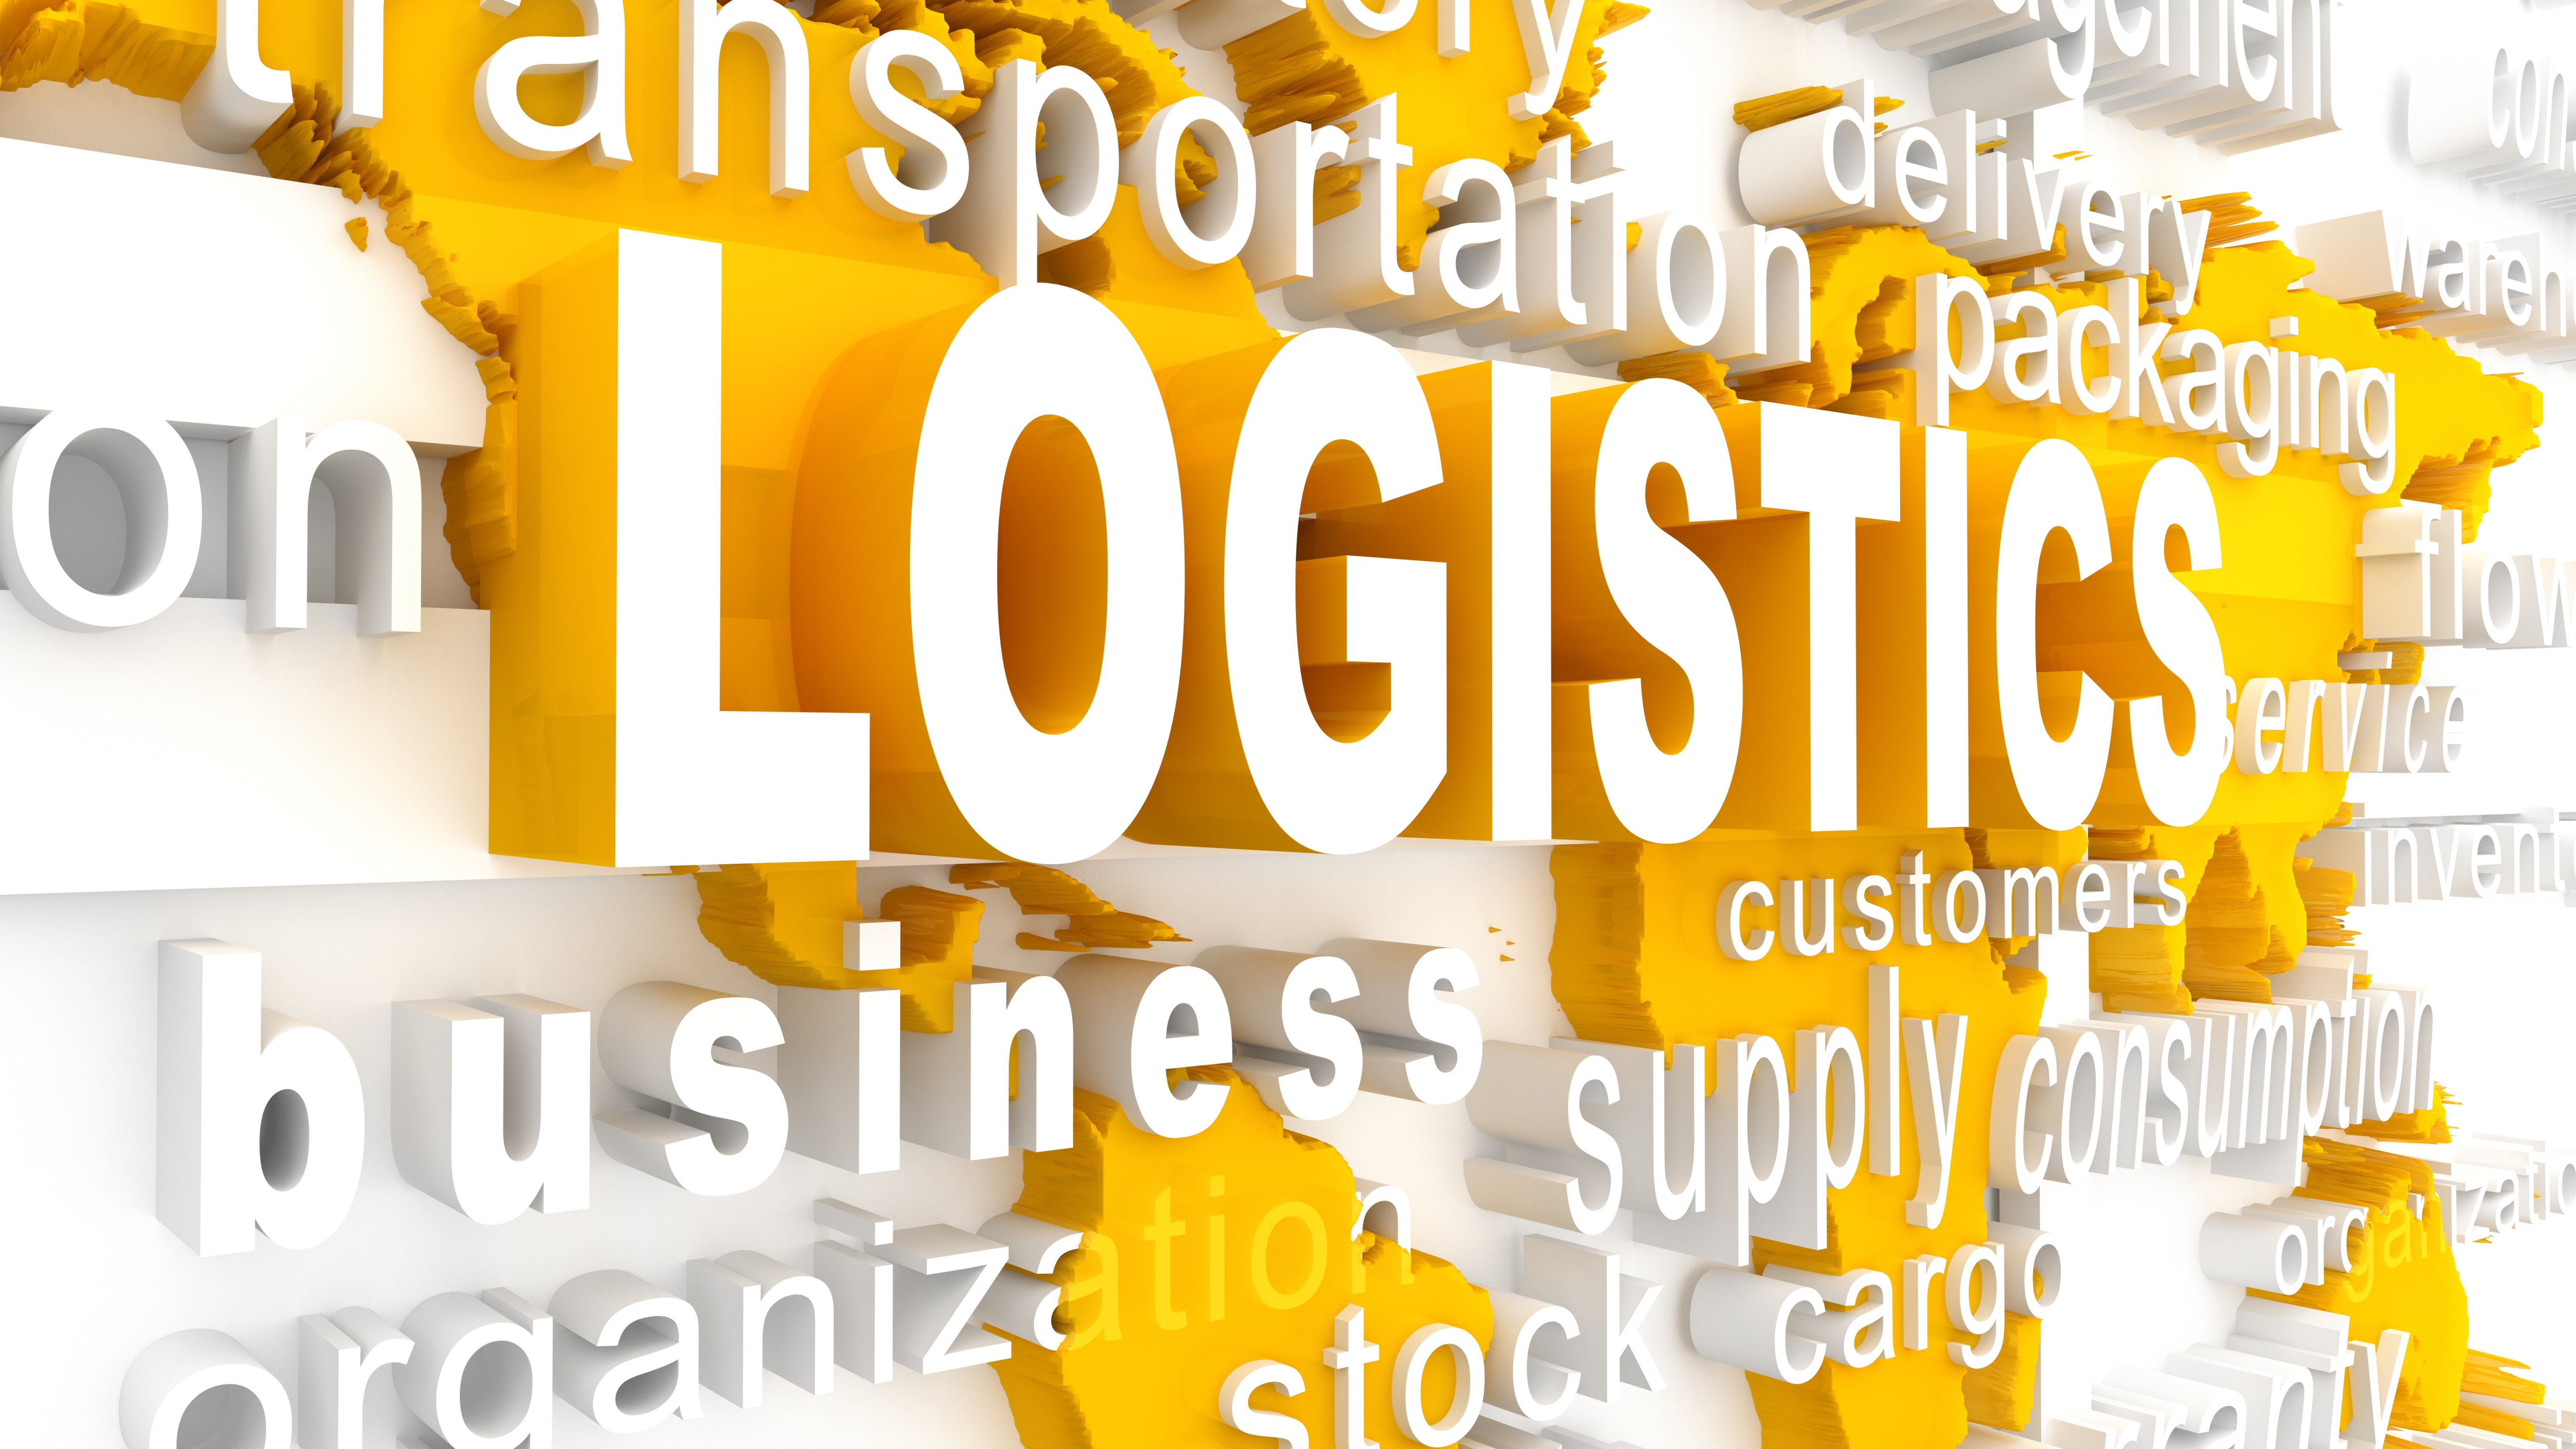 Việt Nam đang thiếu hụt nguồn nhân lực chuyên môn theo tiêu chuẩn quốc tế trong ngành logistics. | Singhang Logistics